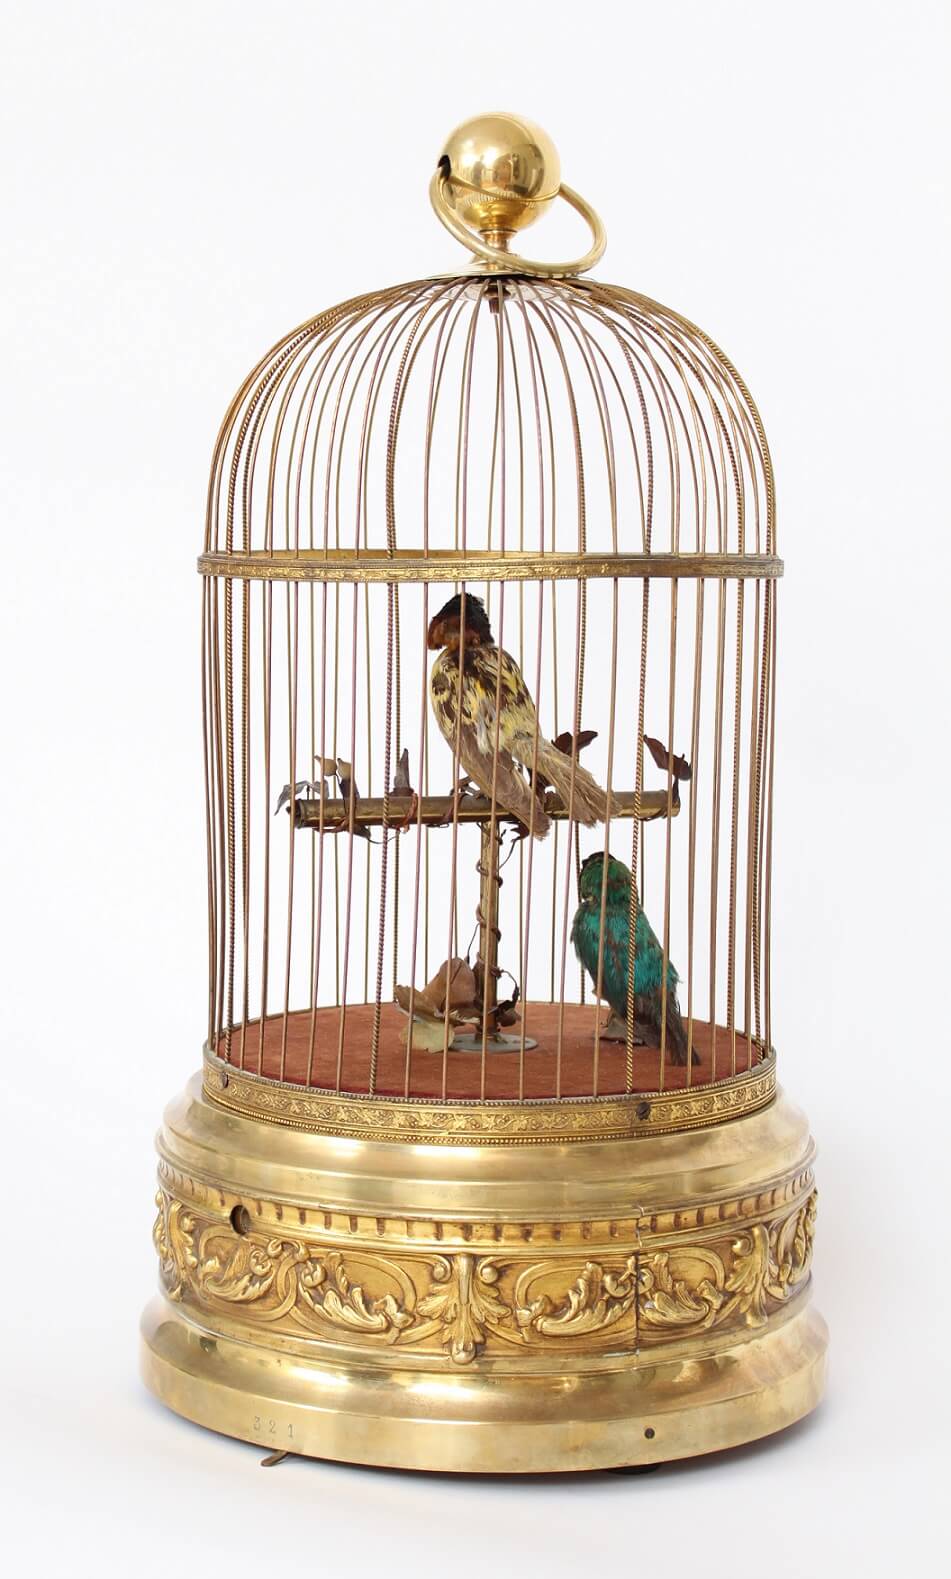 French-Bontems-automaton-animated-bird cage-mechanism-